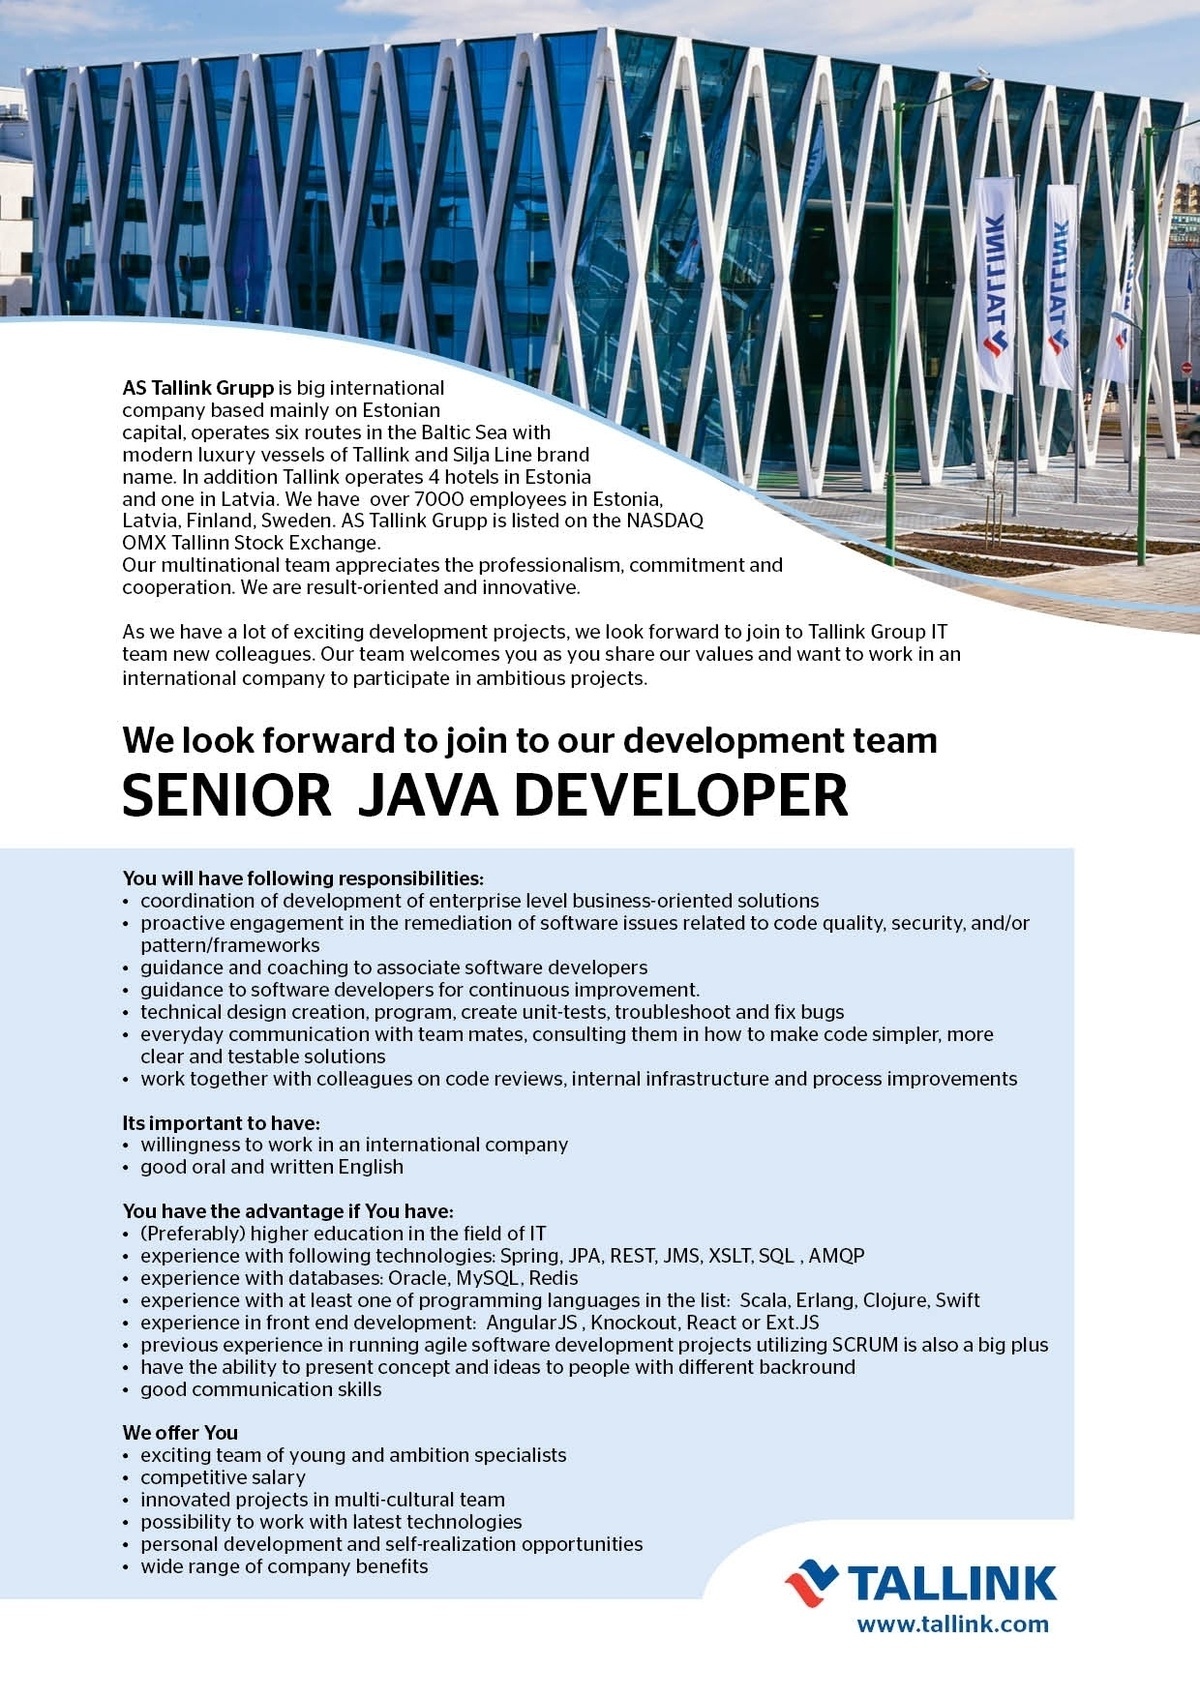 Tallink Grupp AS Senior Java Developer